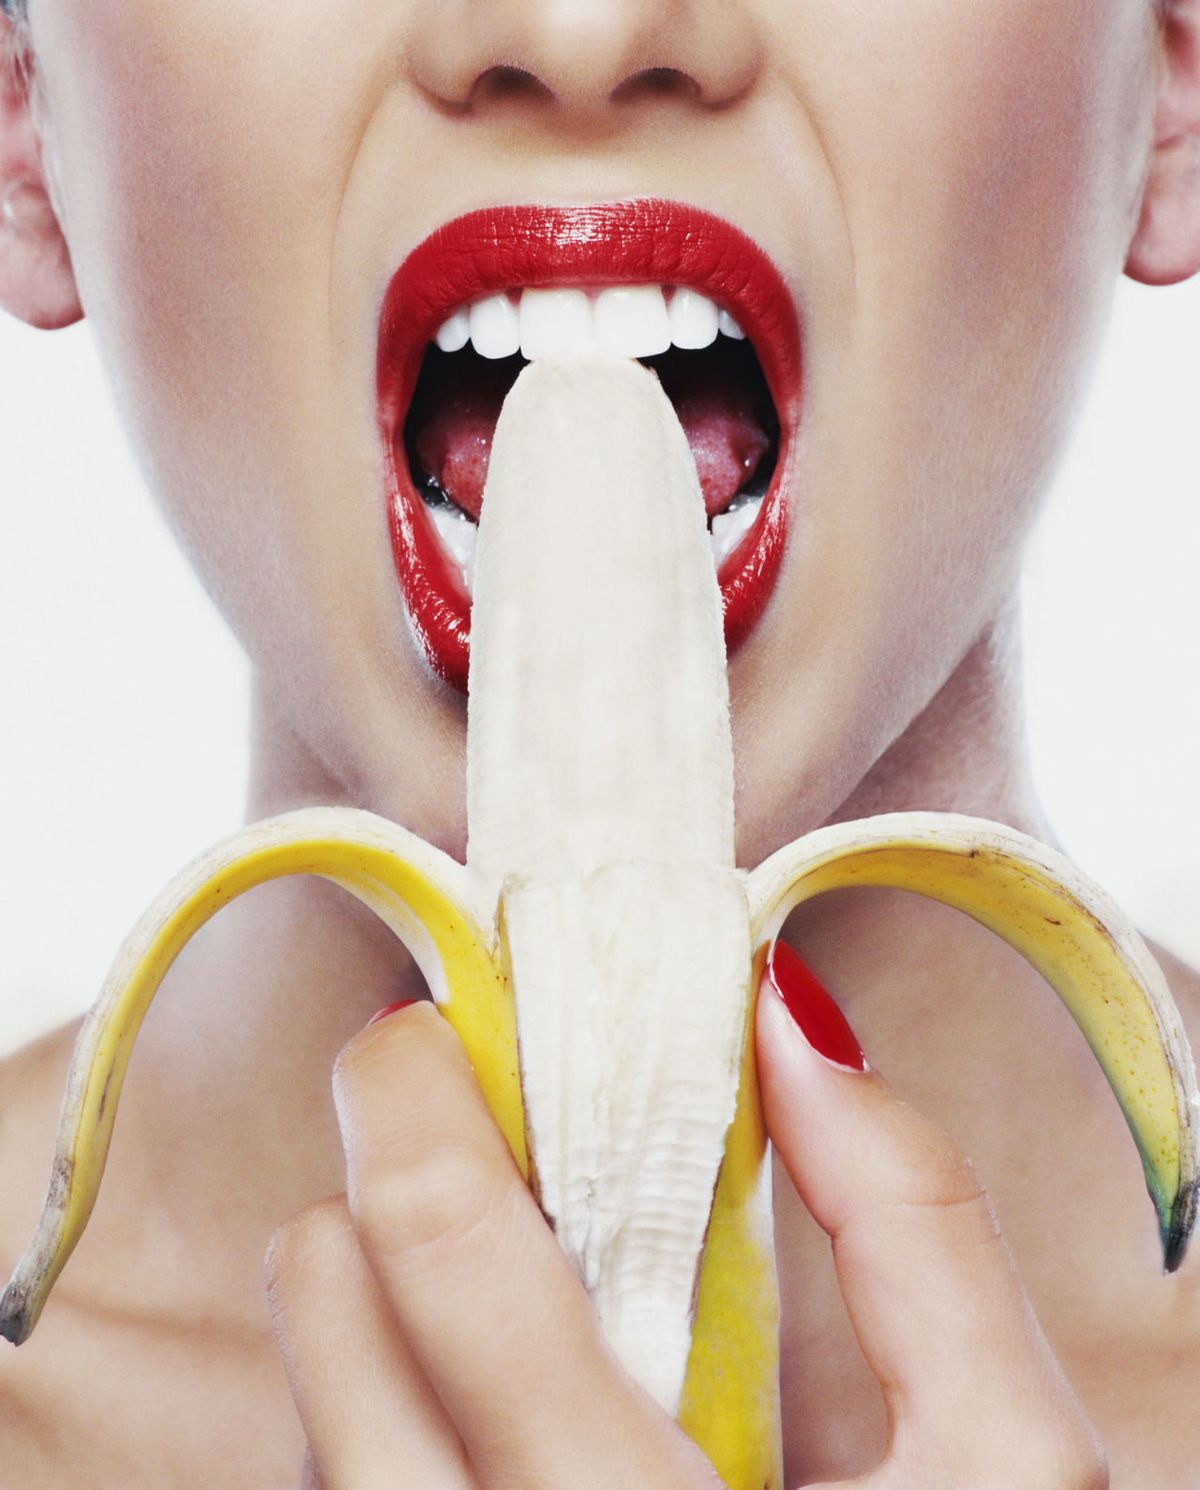 woman eating banana lipstick